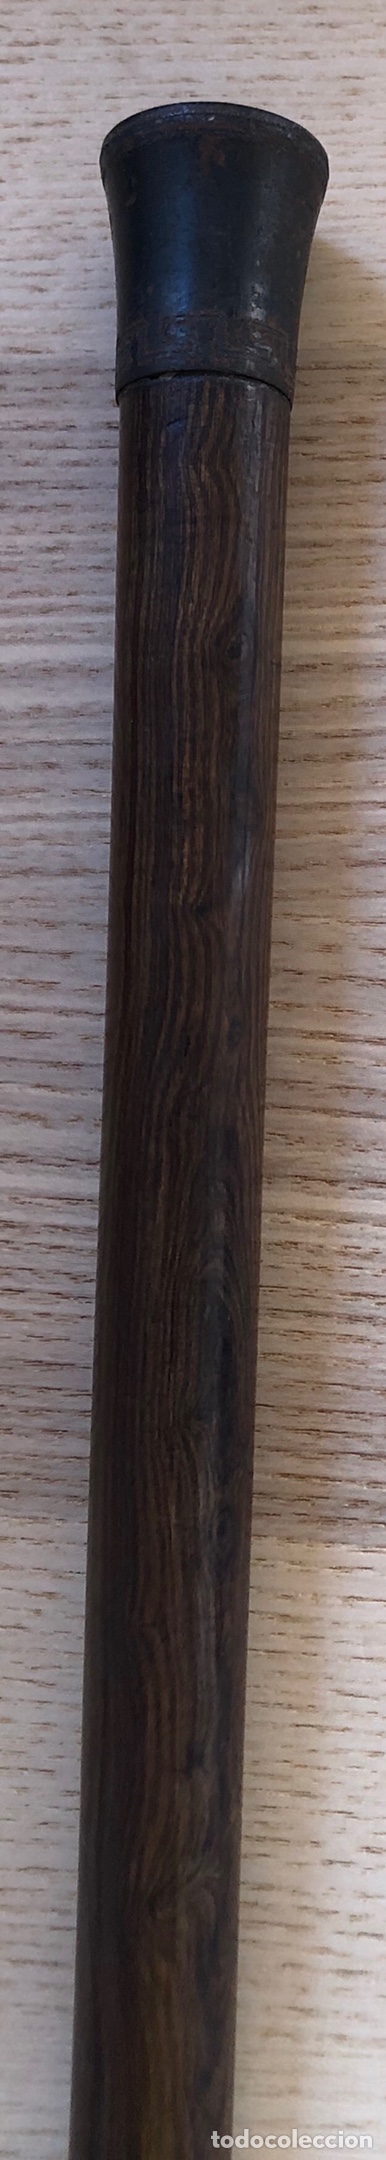 Antigüedades: Antigua Baston, con empuñadura en hierro, y vara de madera noble. Pps. S.XX. - Foto 5 - 213470000